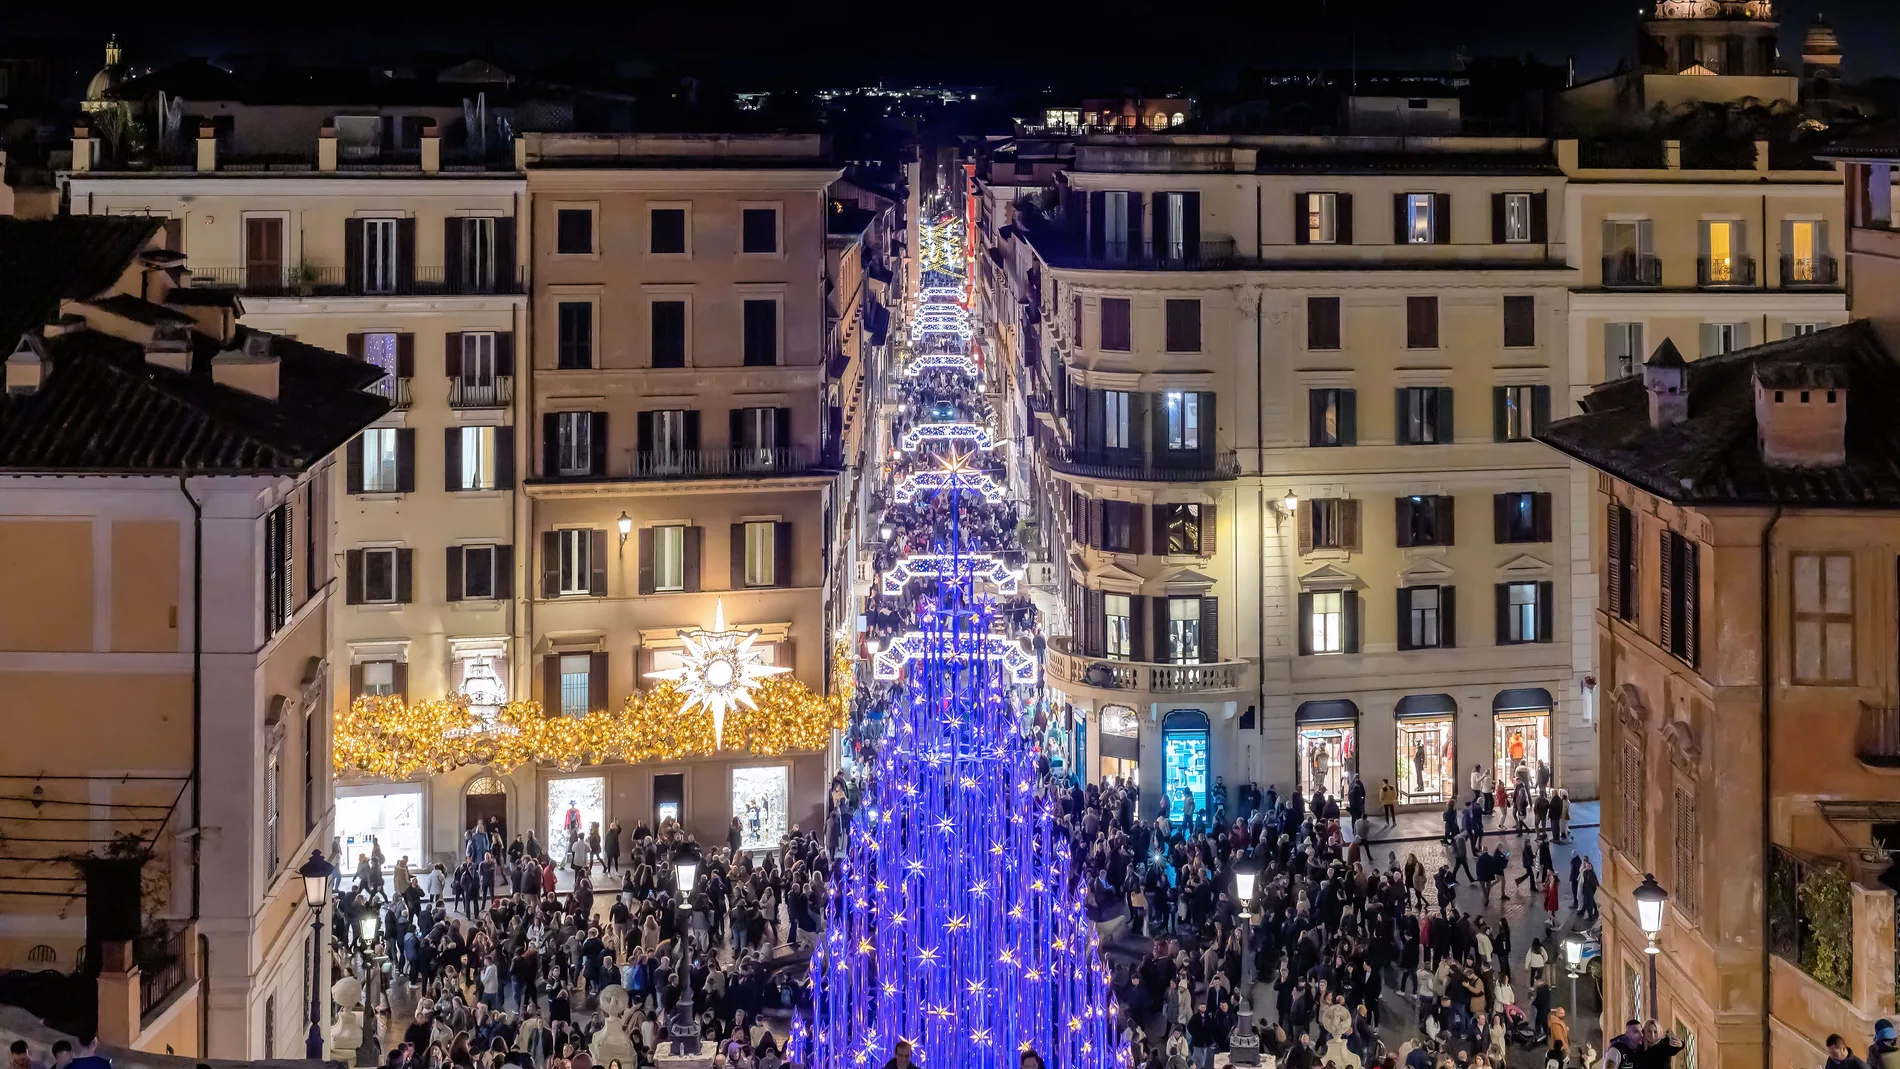 Roma en Navidad